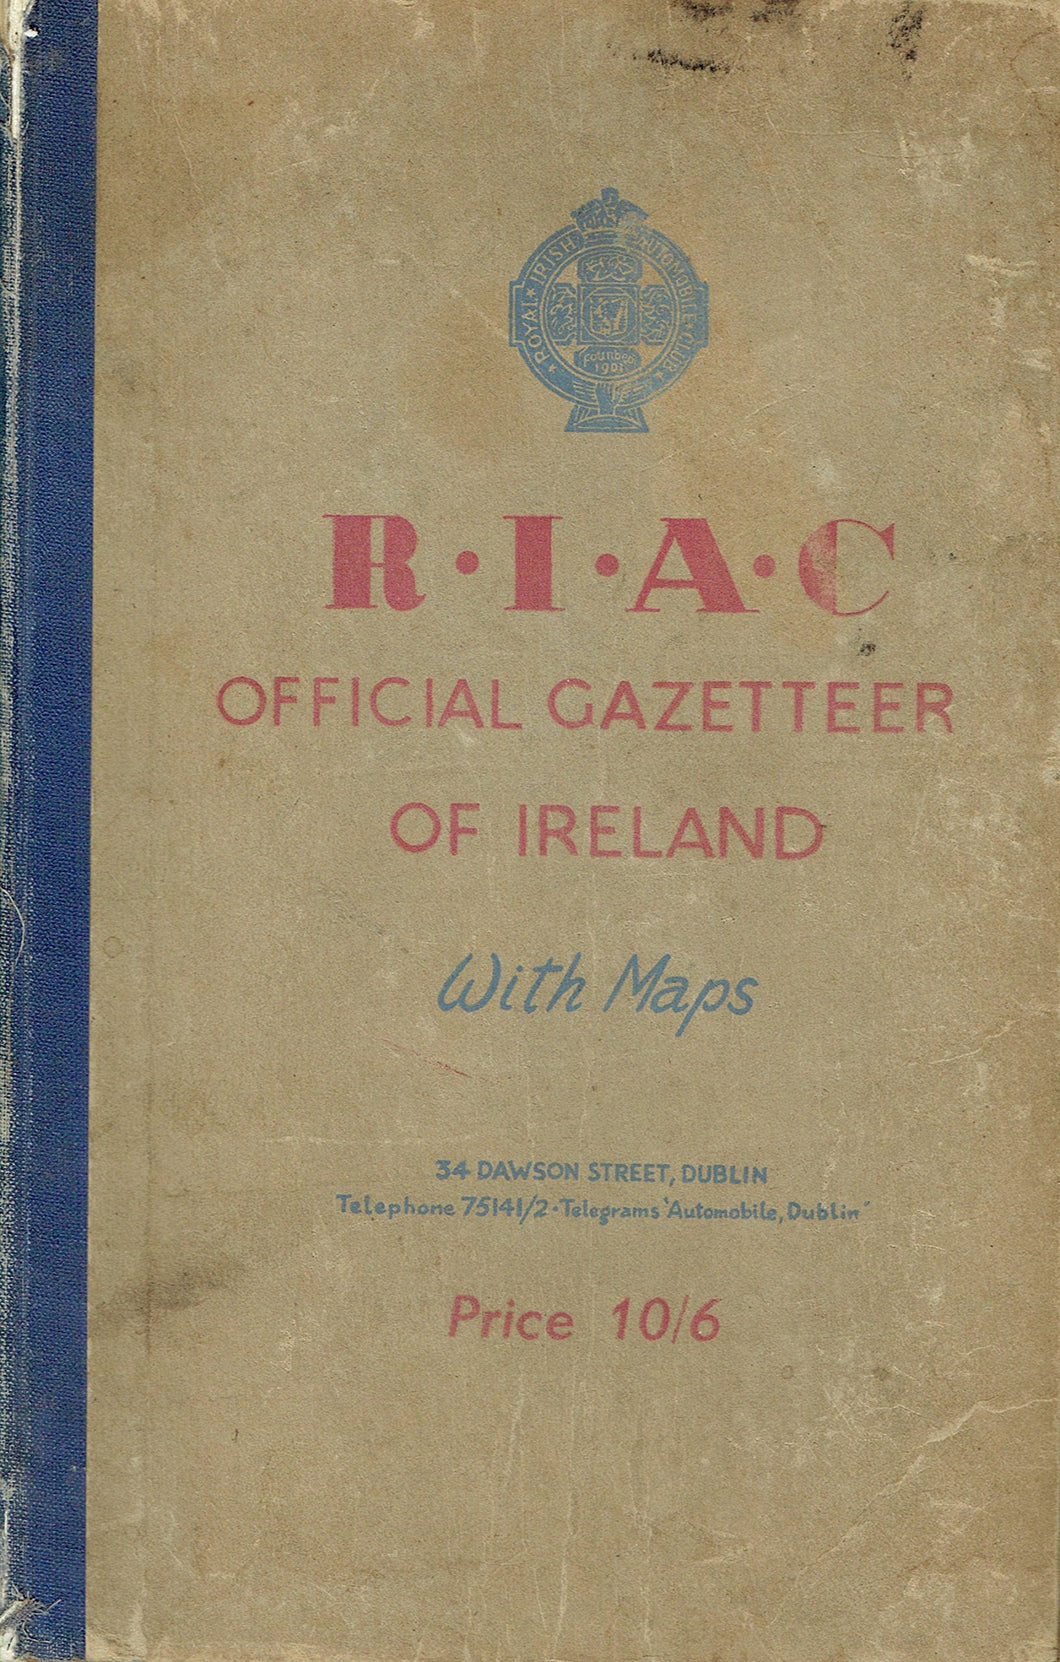 RIAC Official Gazetteer of Ireland